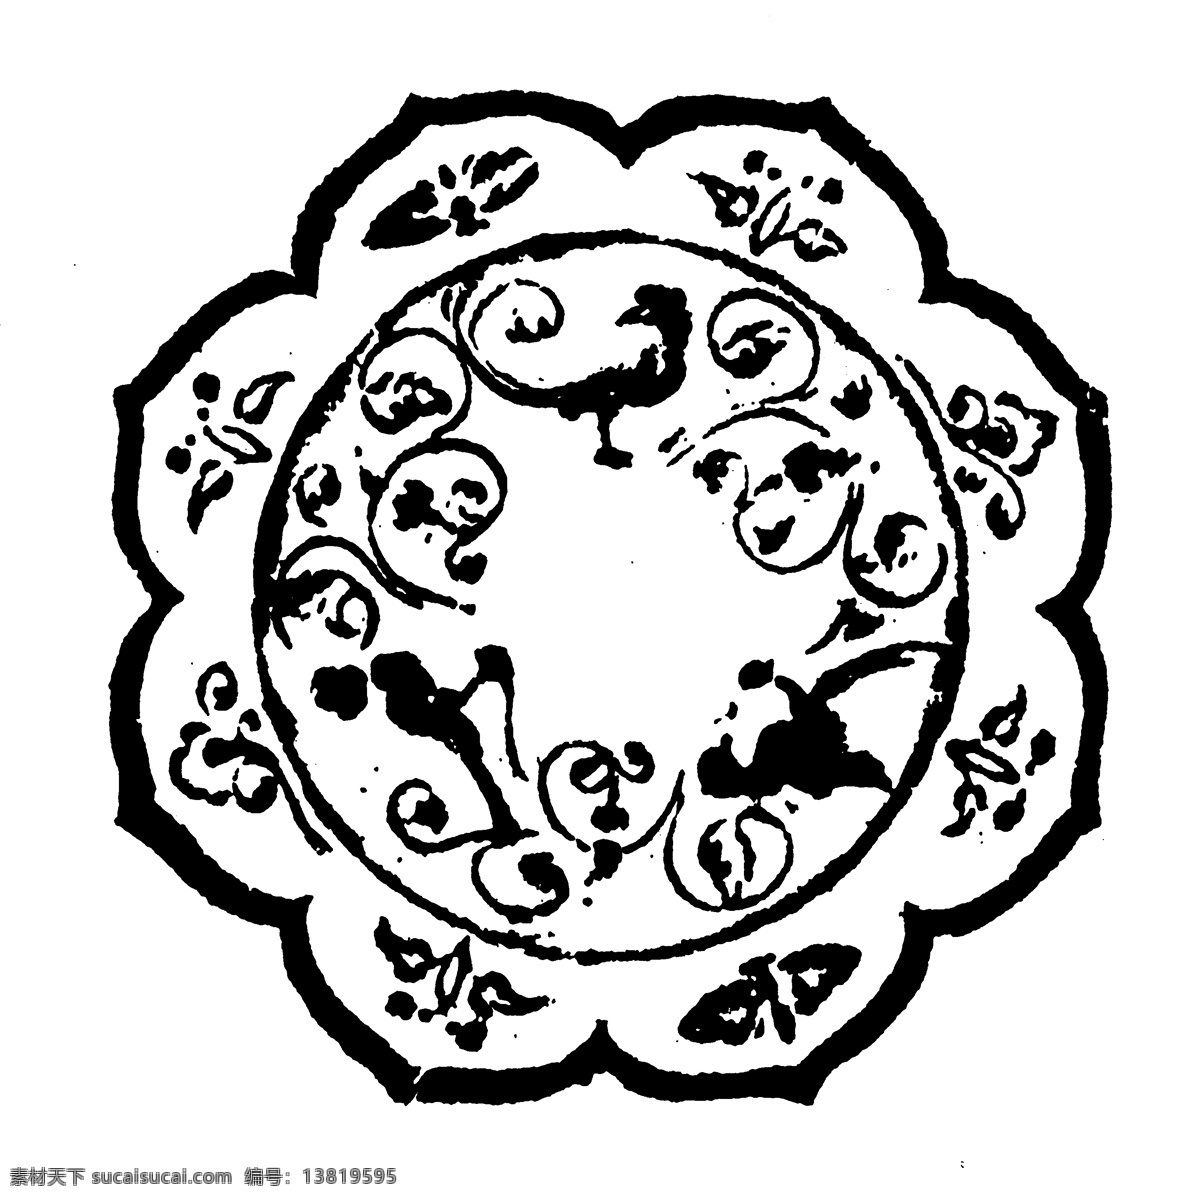 装饰图案 隋唐五代图案 中国 传统 图案 设计素材 书画美术 白色